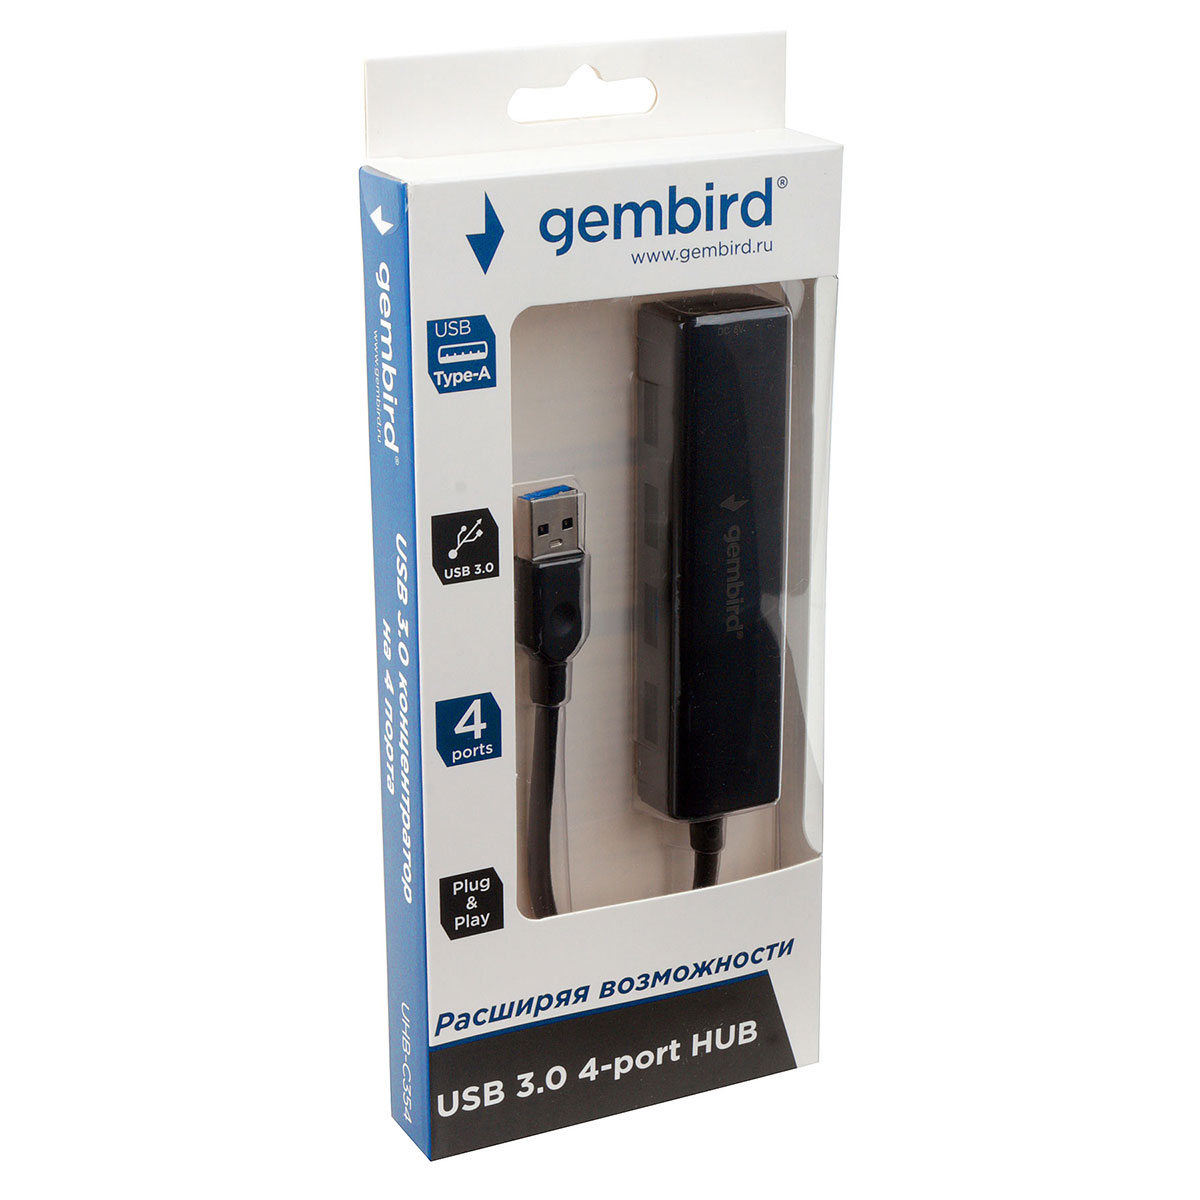 Gembird UHB-C354